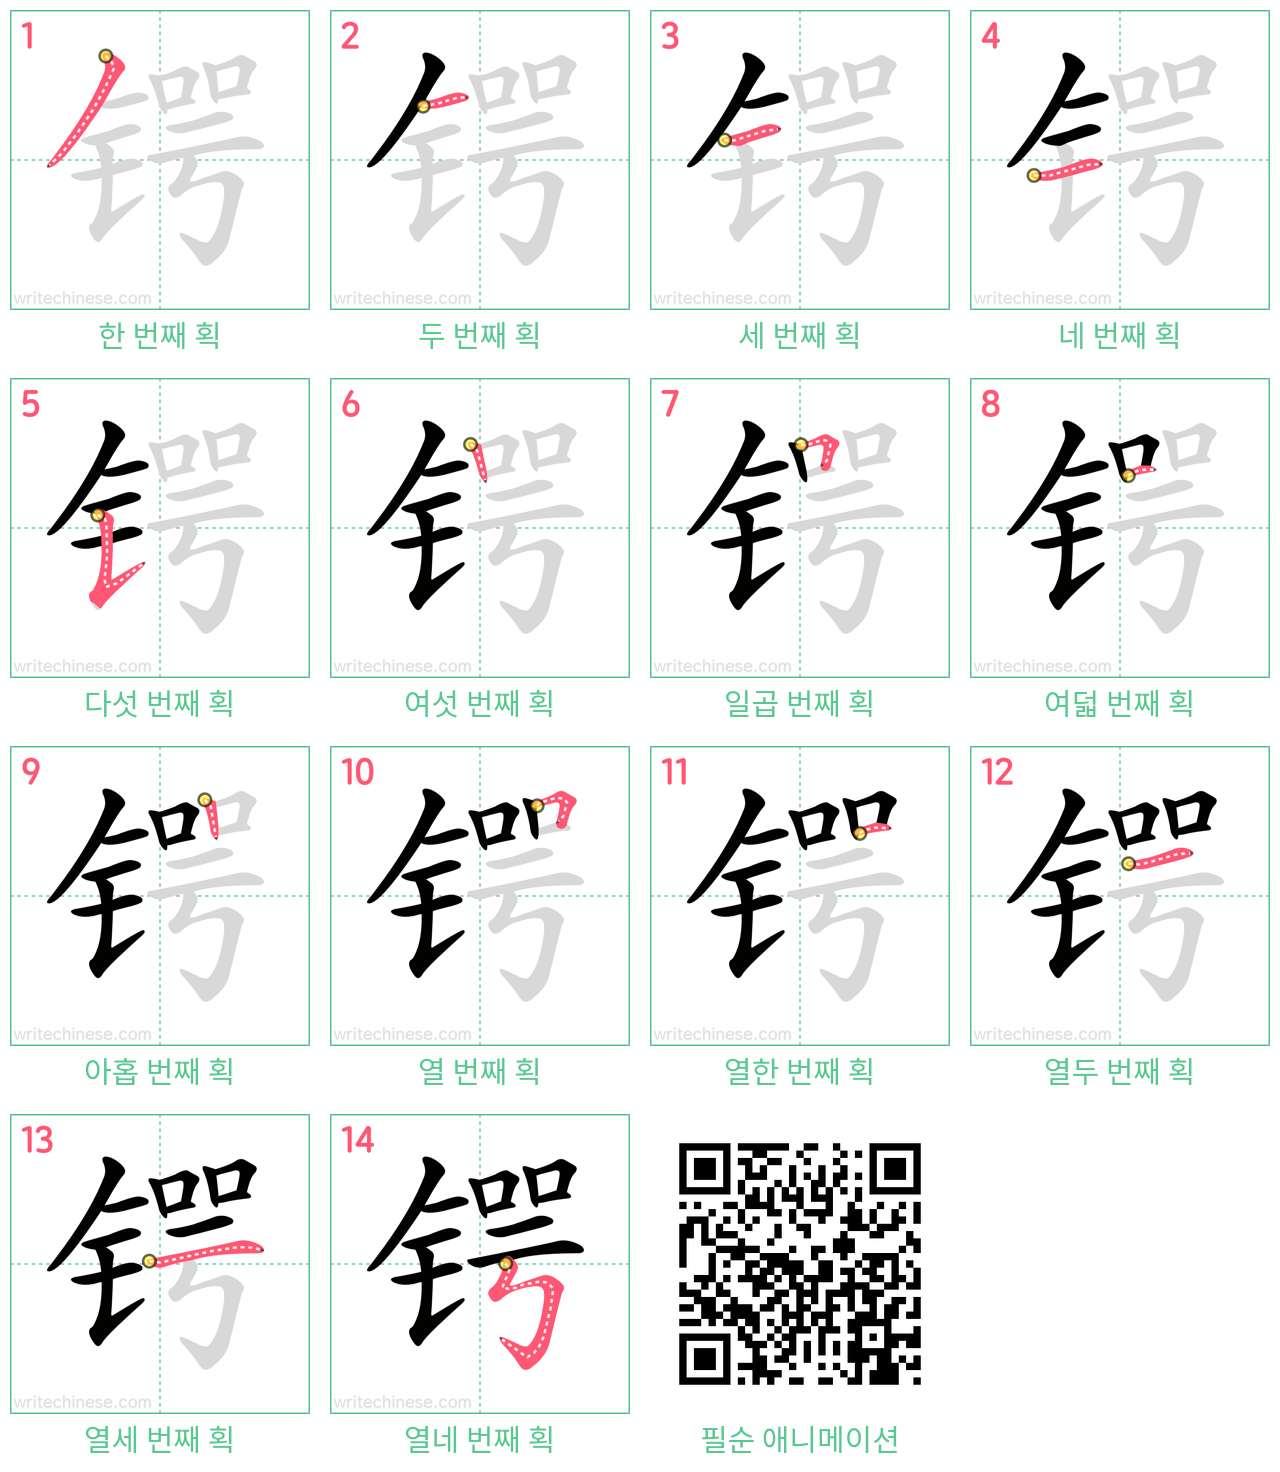 锷 step-by-step stroke order diagrams